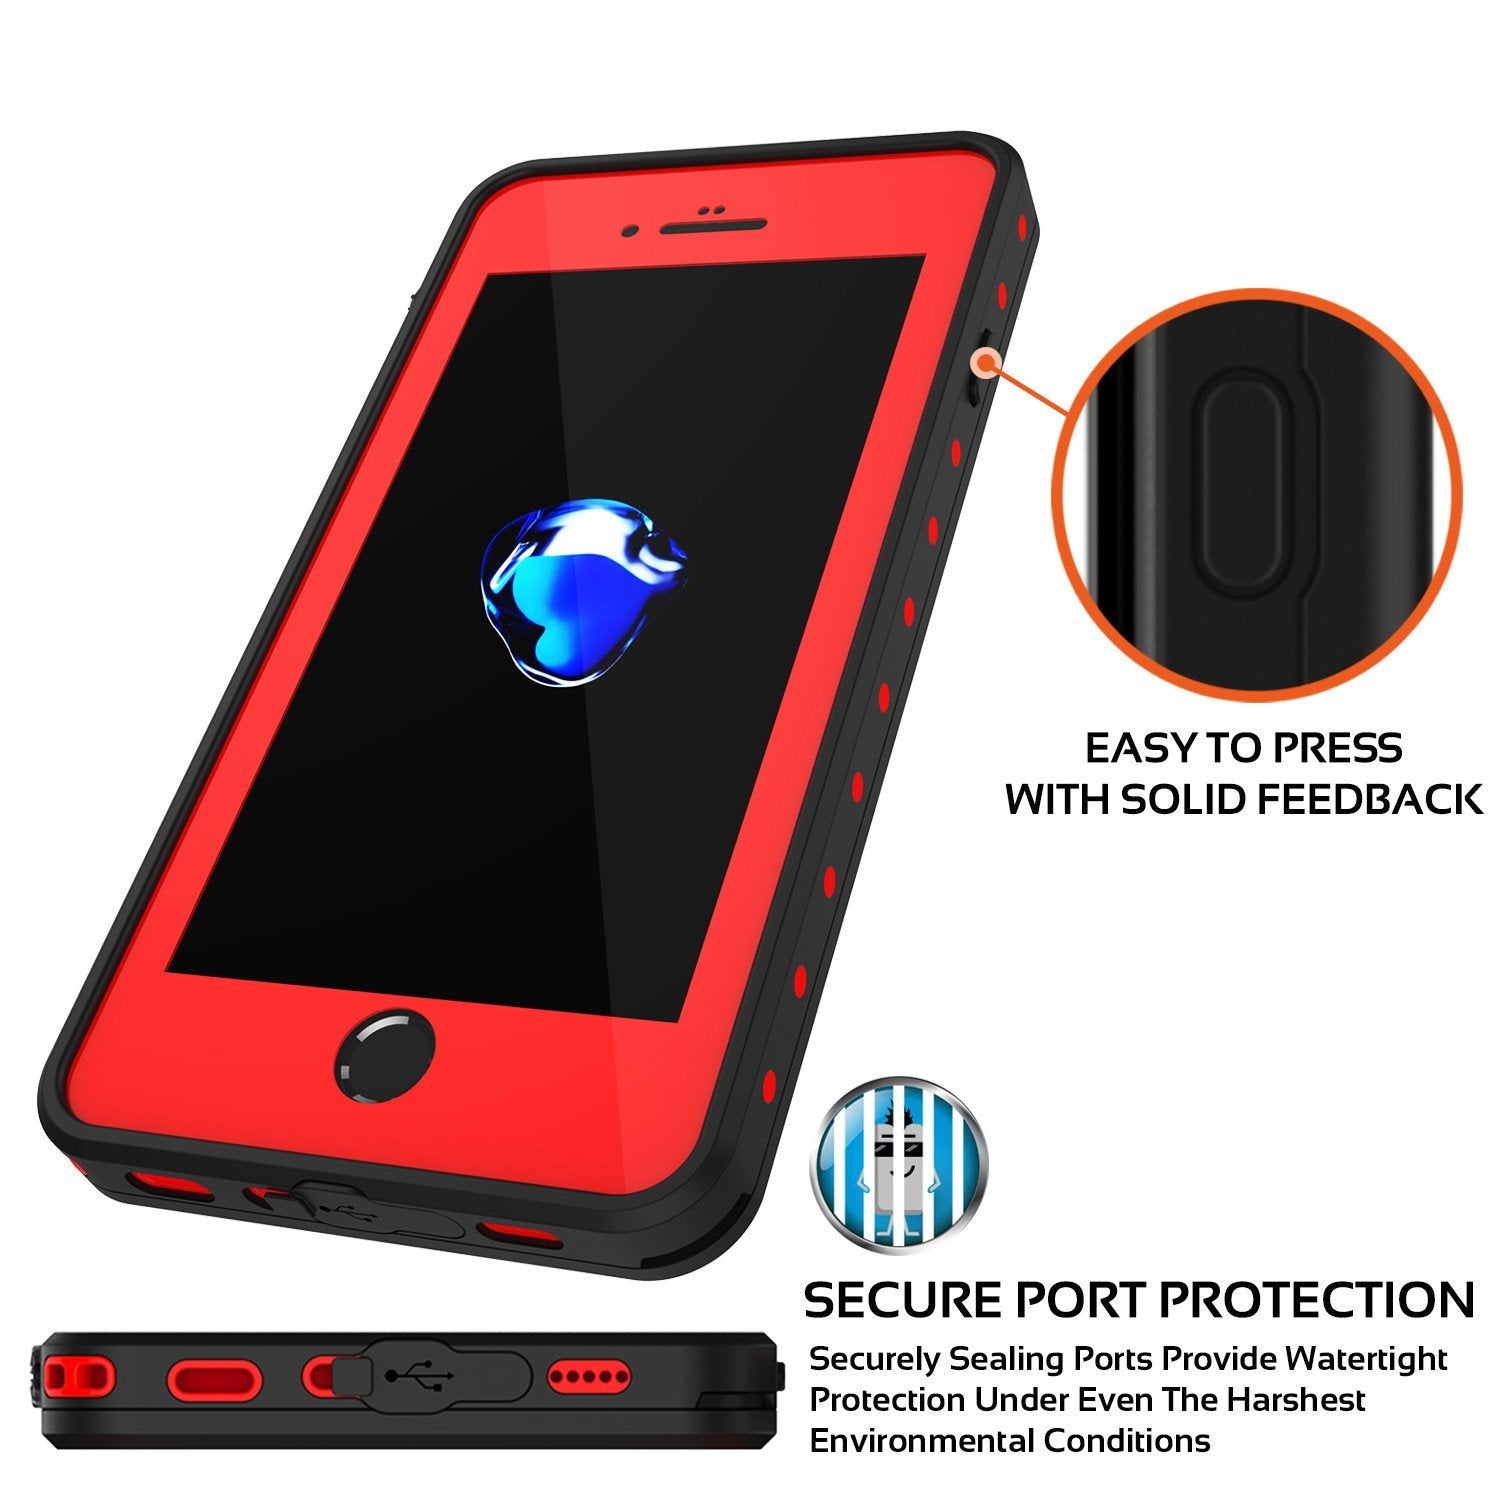 iPhone 8+ Plus Waterproof IP68 Case, Punkcase [Red] [StudStar Series] [Slim Fit] [Dirtproof] - PunkCase NZ